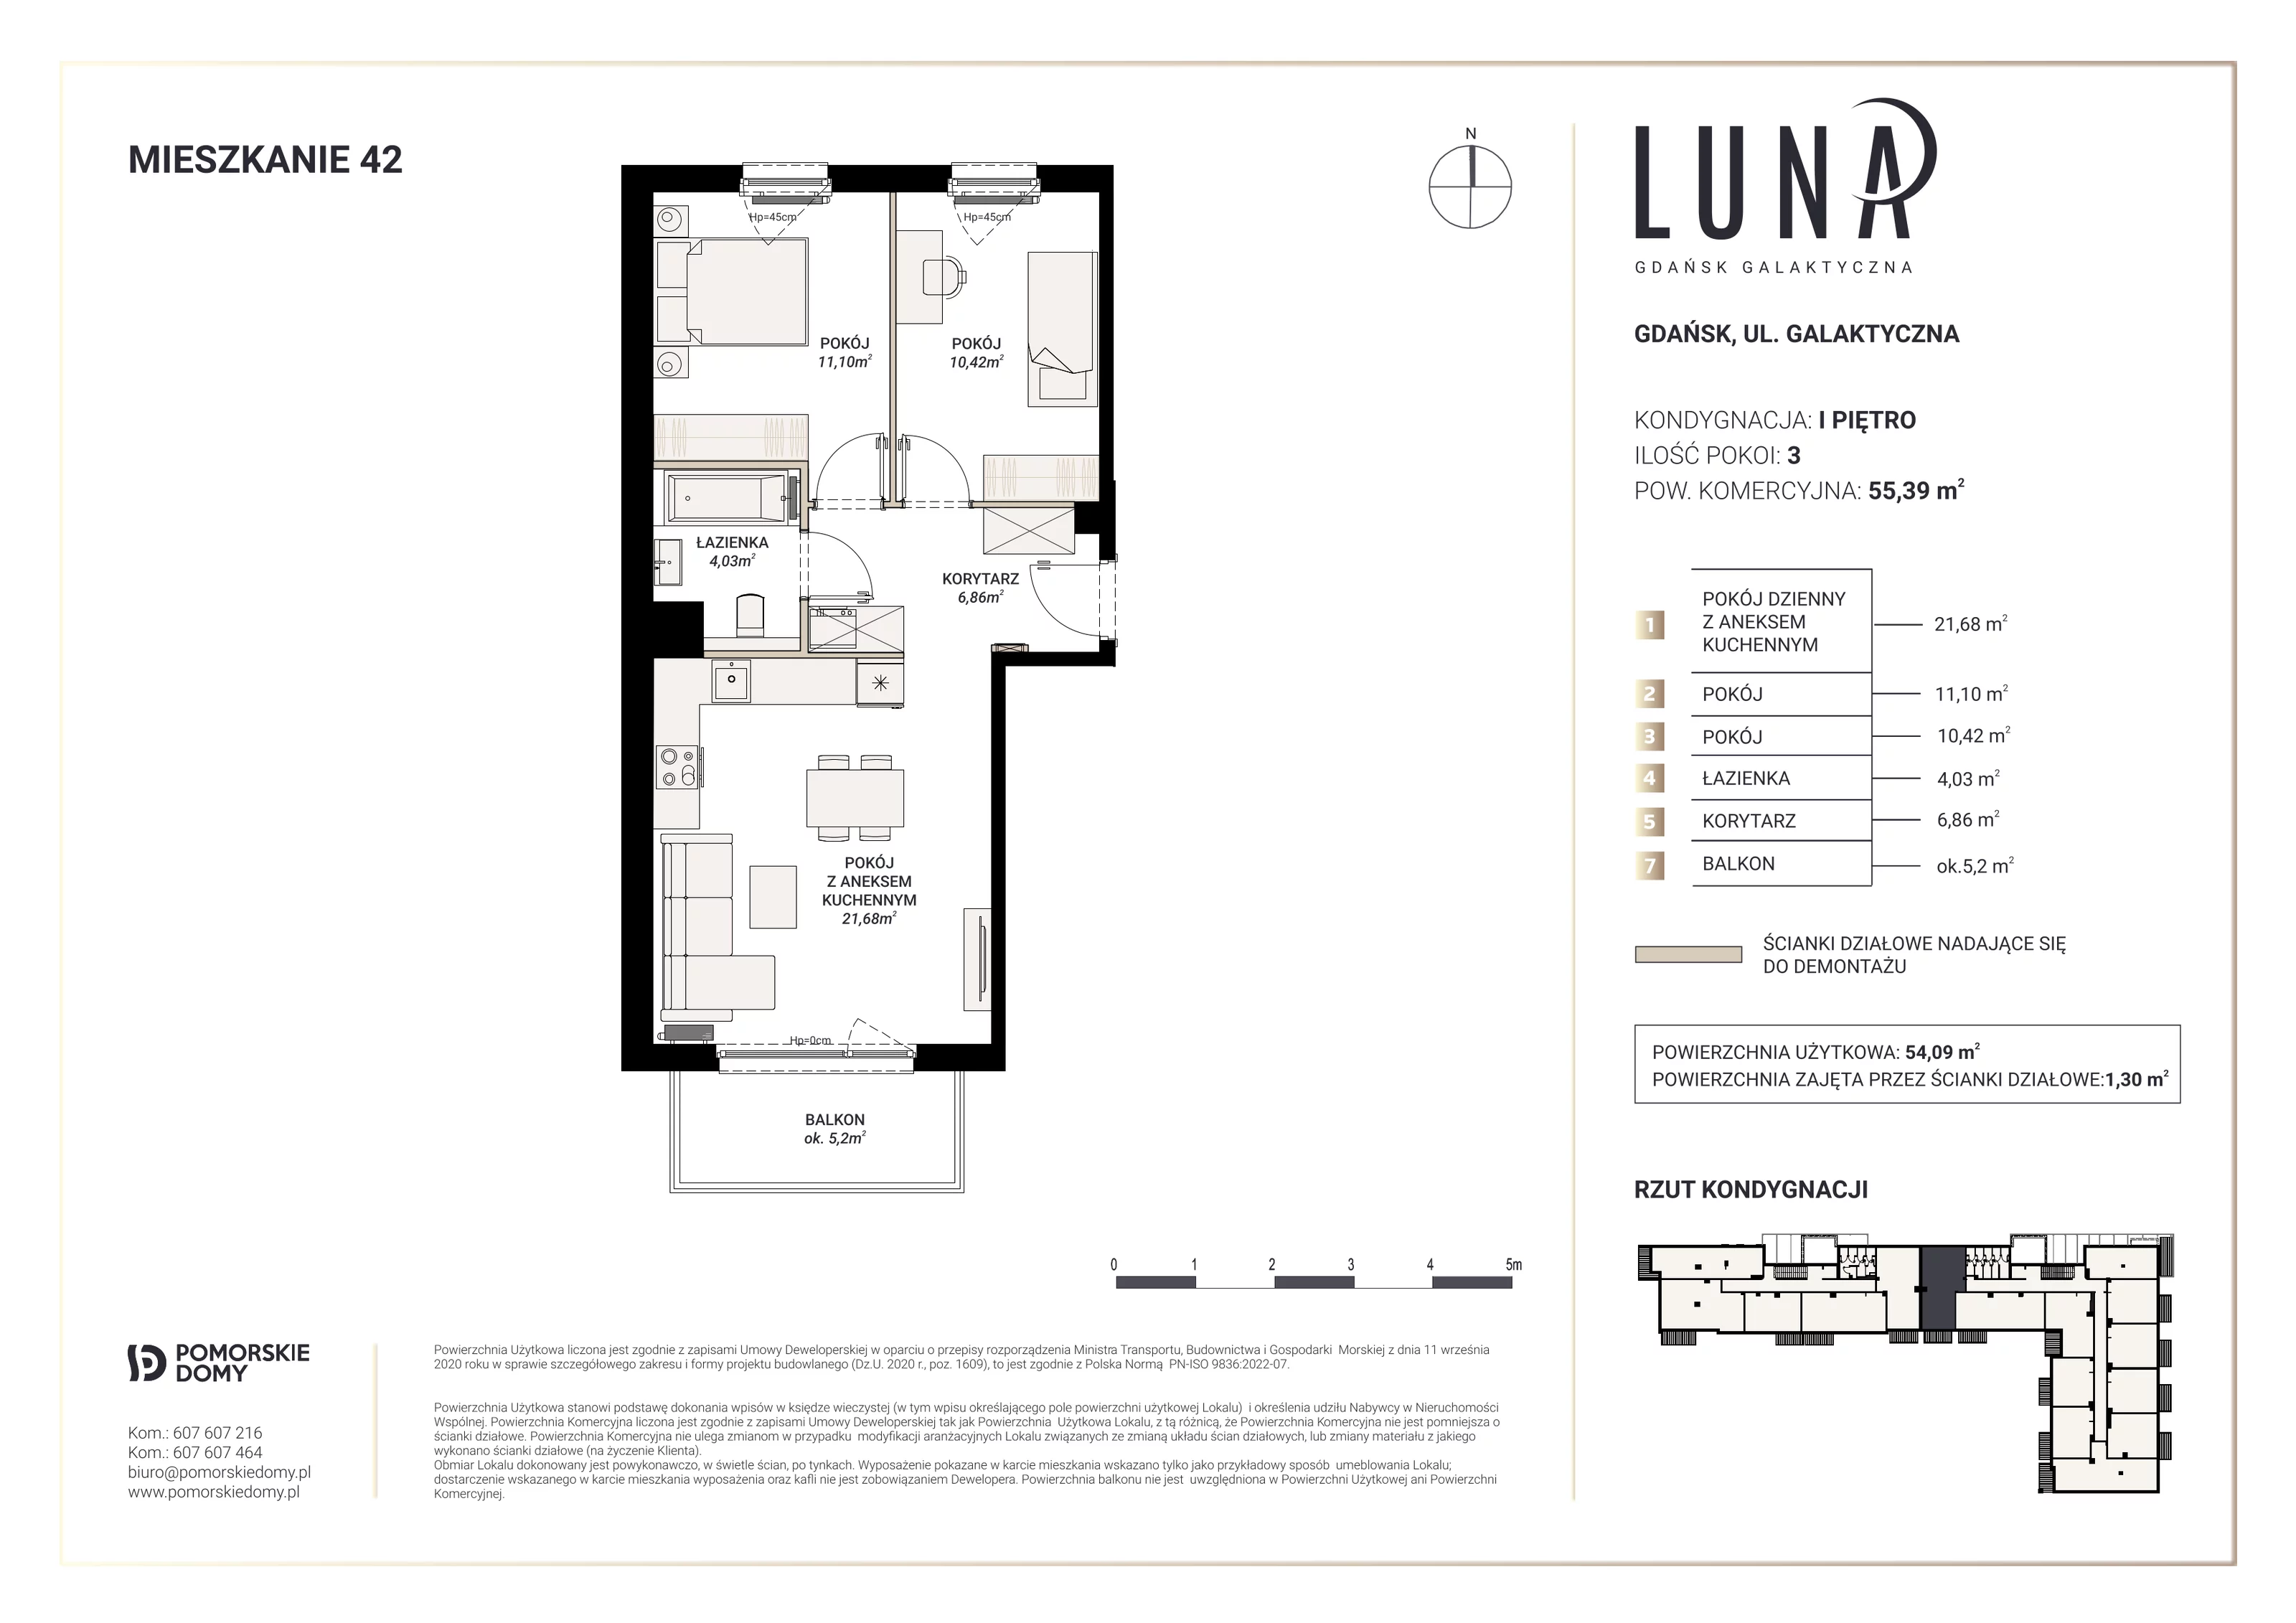 Mieszkanie 54,09 m², piętro 1, oferta nr 42, Luna, Gdańsk, Osowa, ul. Galaktyczna/Homera